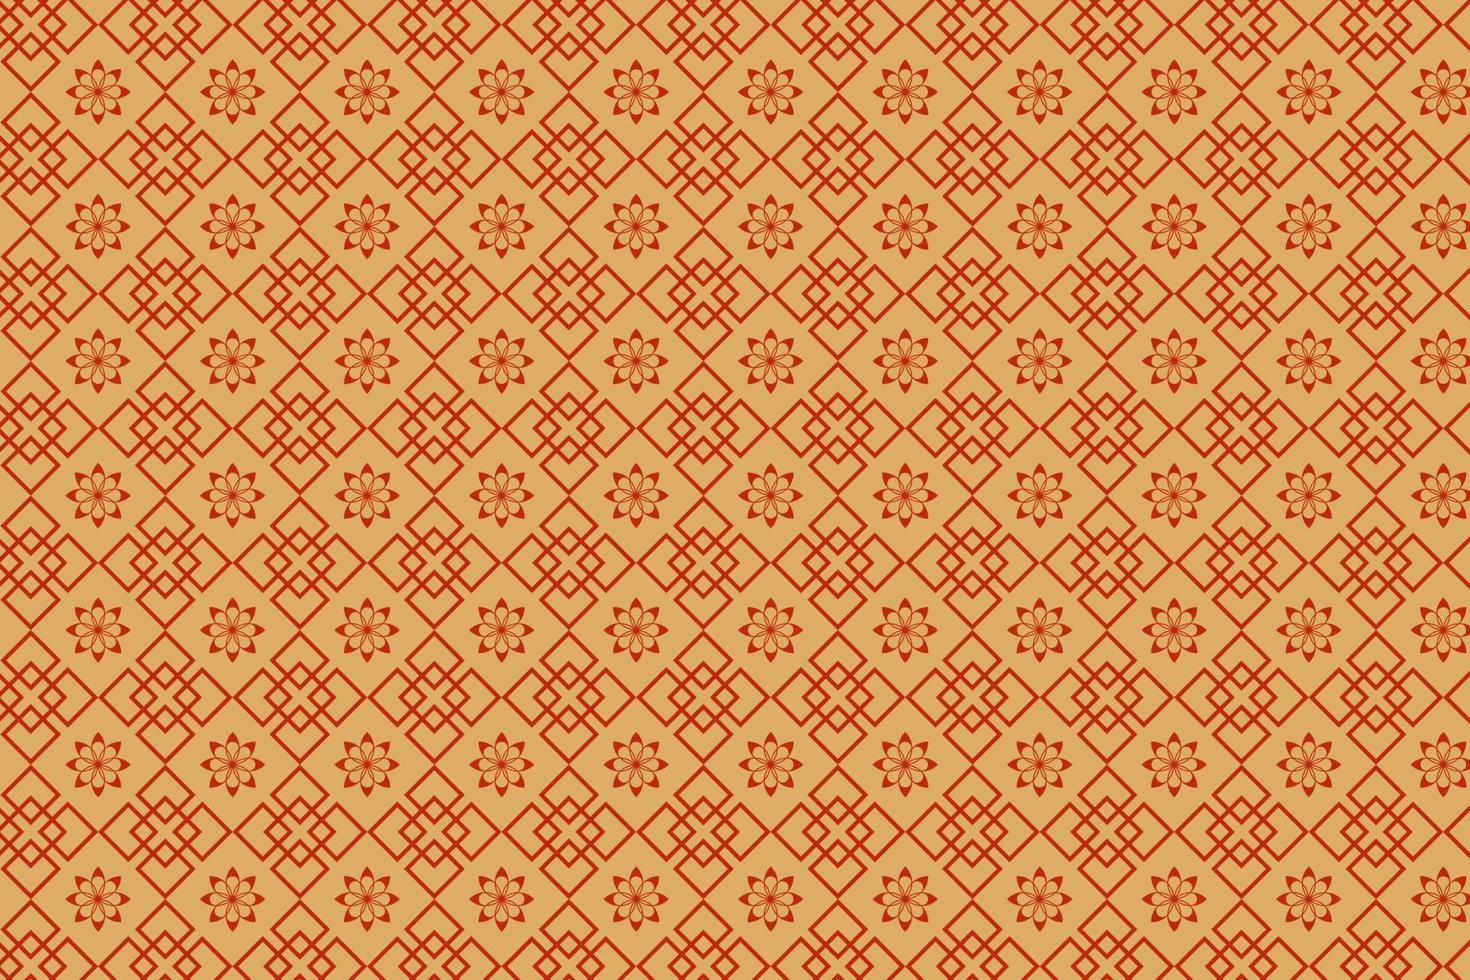 kersenbloesem vector patroon, traditioneel patroon, traditionele textuur, rode en gouden achtergrond.